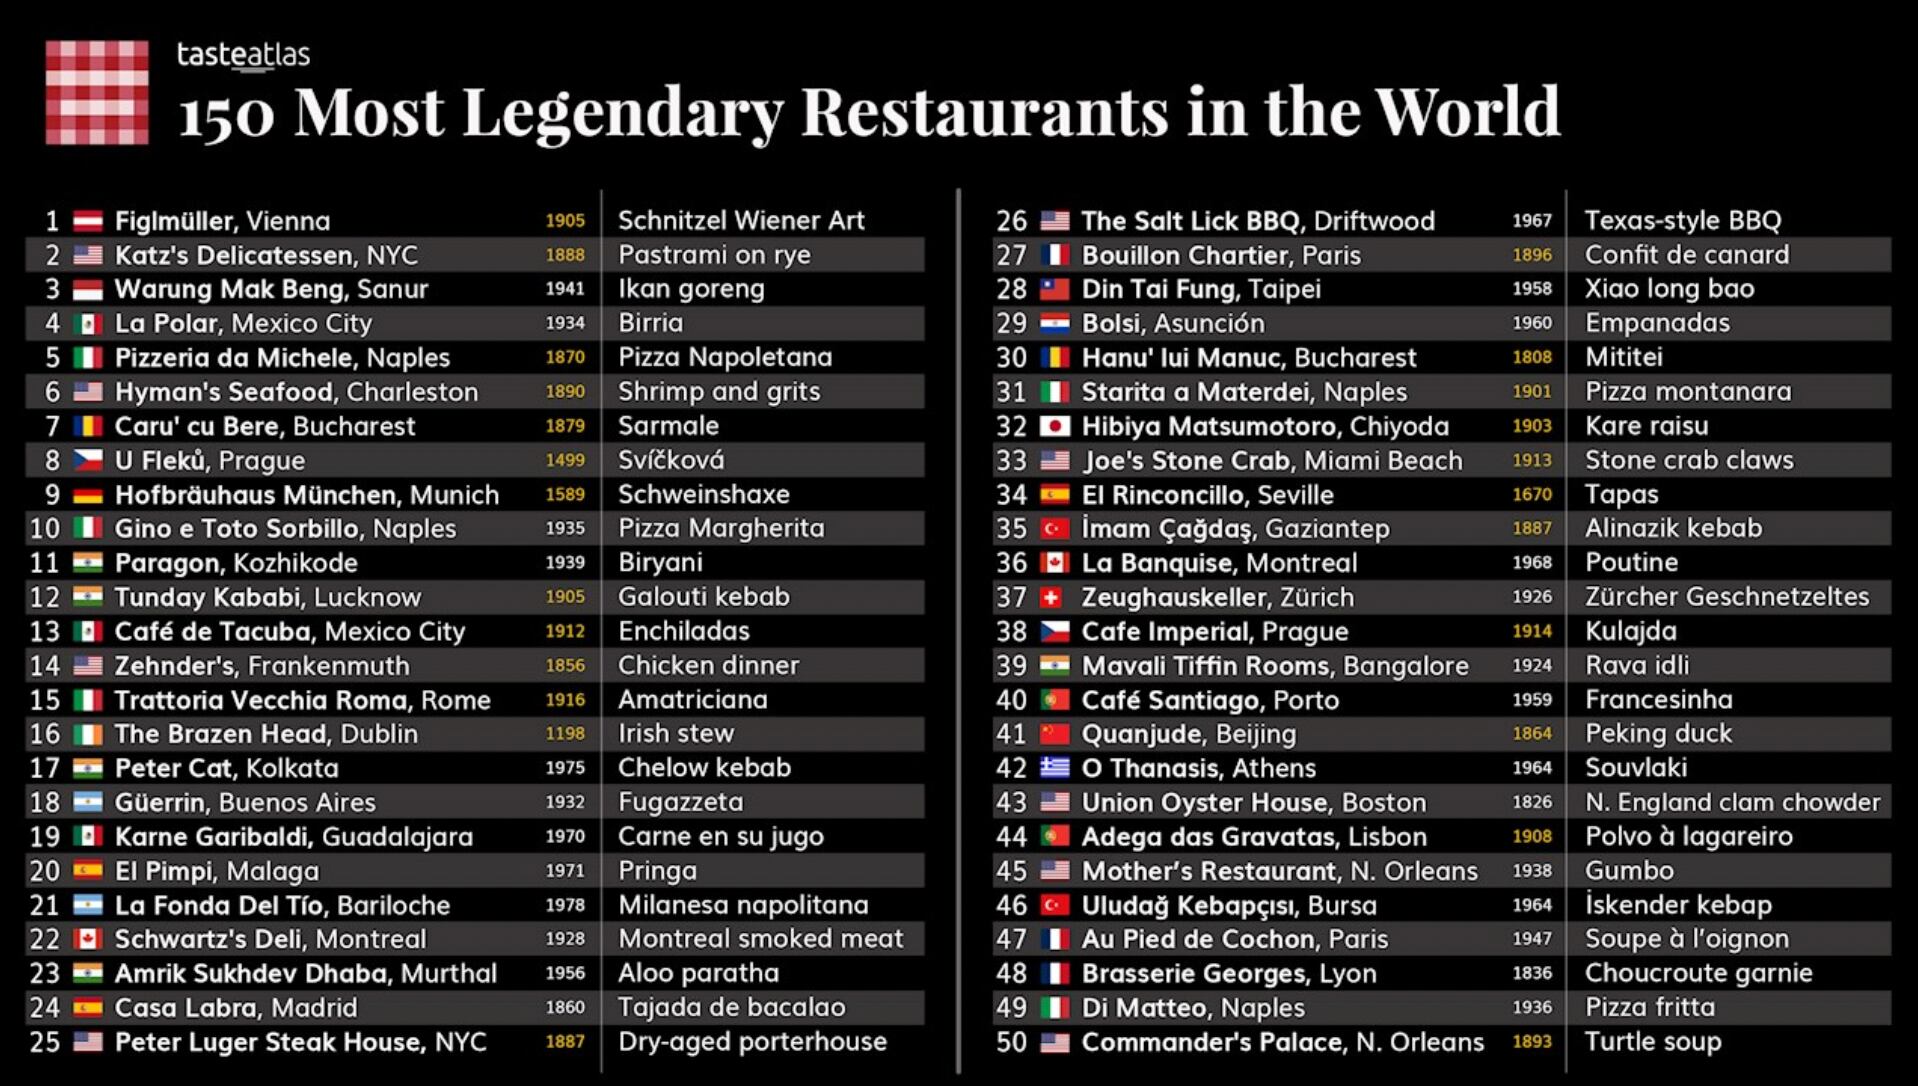 Los 150 lugares legendarios en el mundo y sus platillos, según Taste Atlas. (Foto: https://www.tasteatlas.com/)